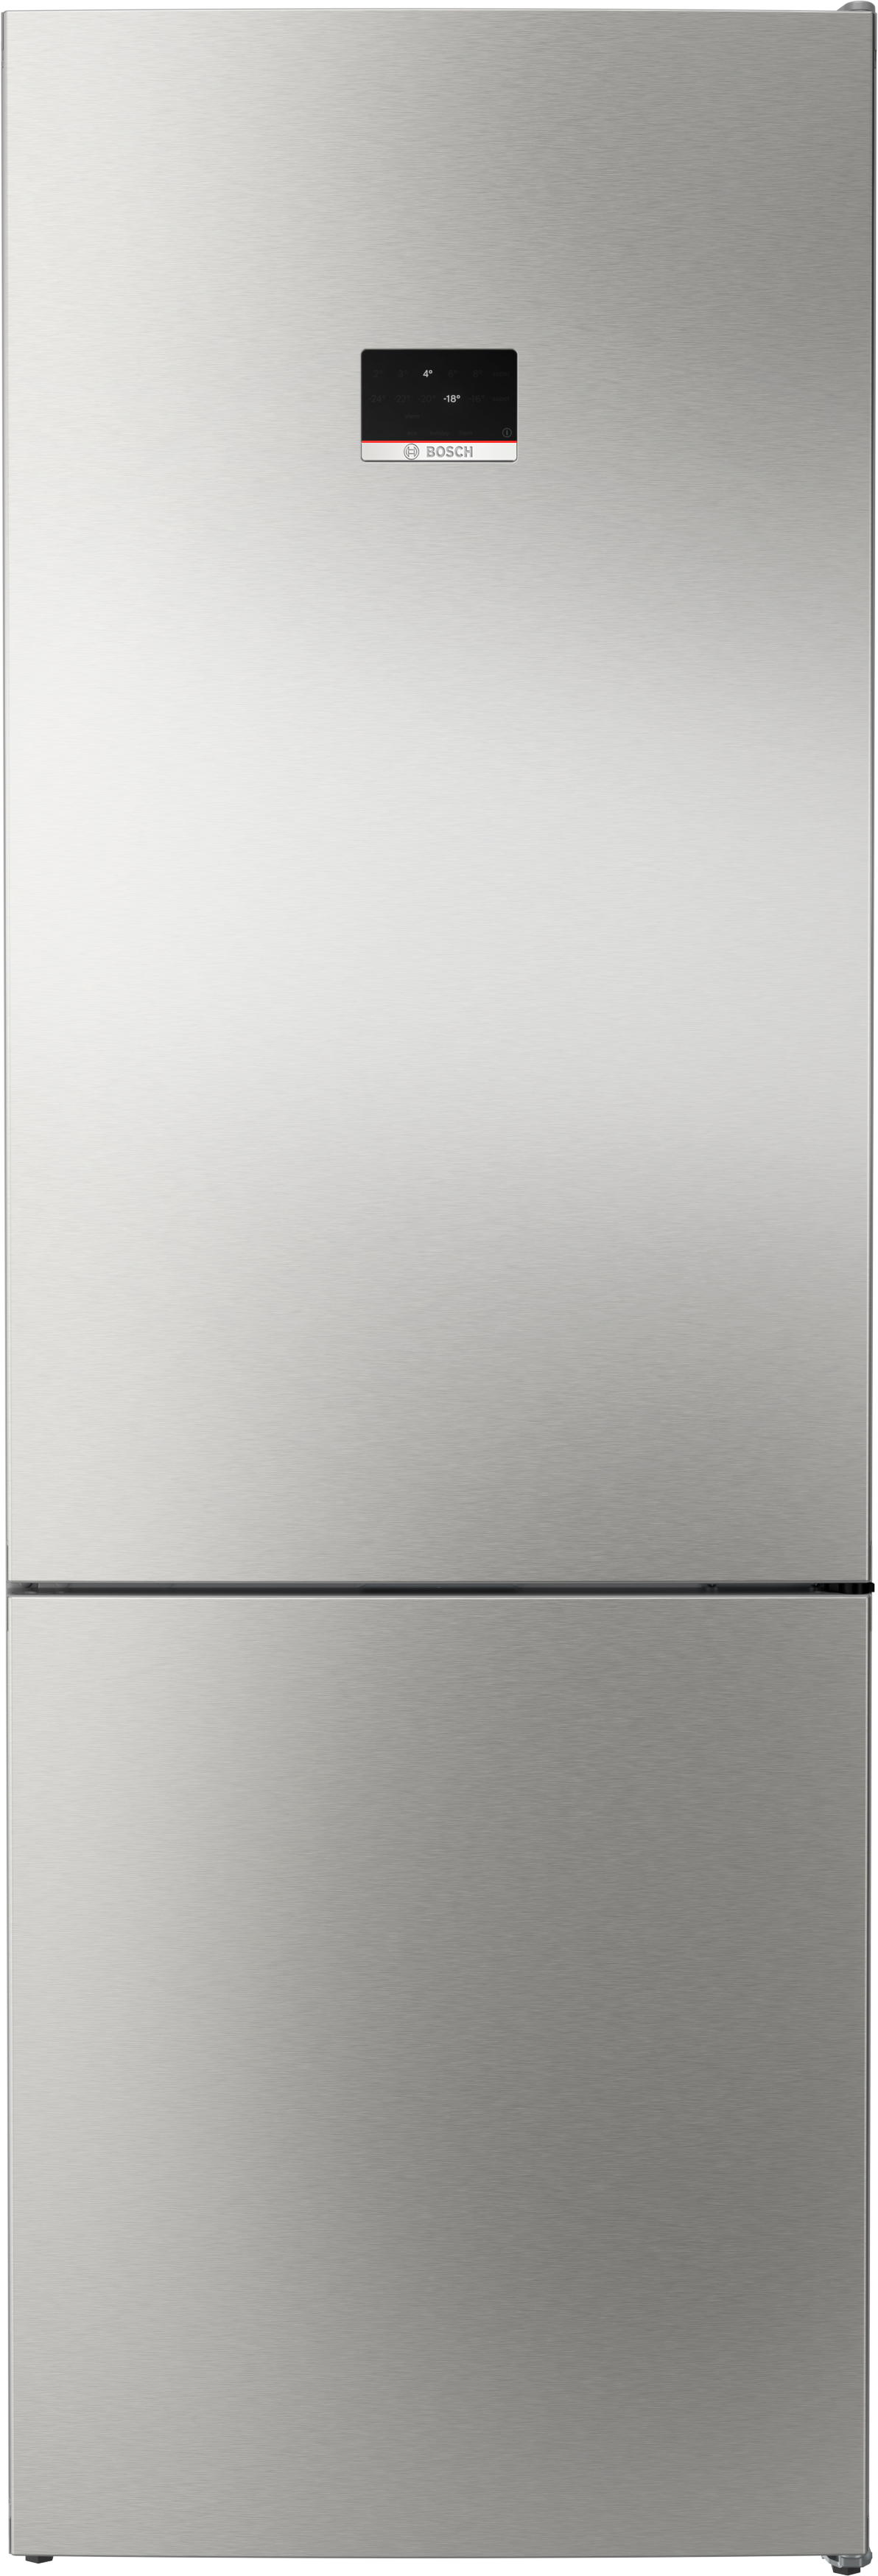 Холодильник Bosch KGN49XID0U в интернет-магазине, главное фото